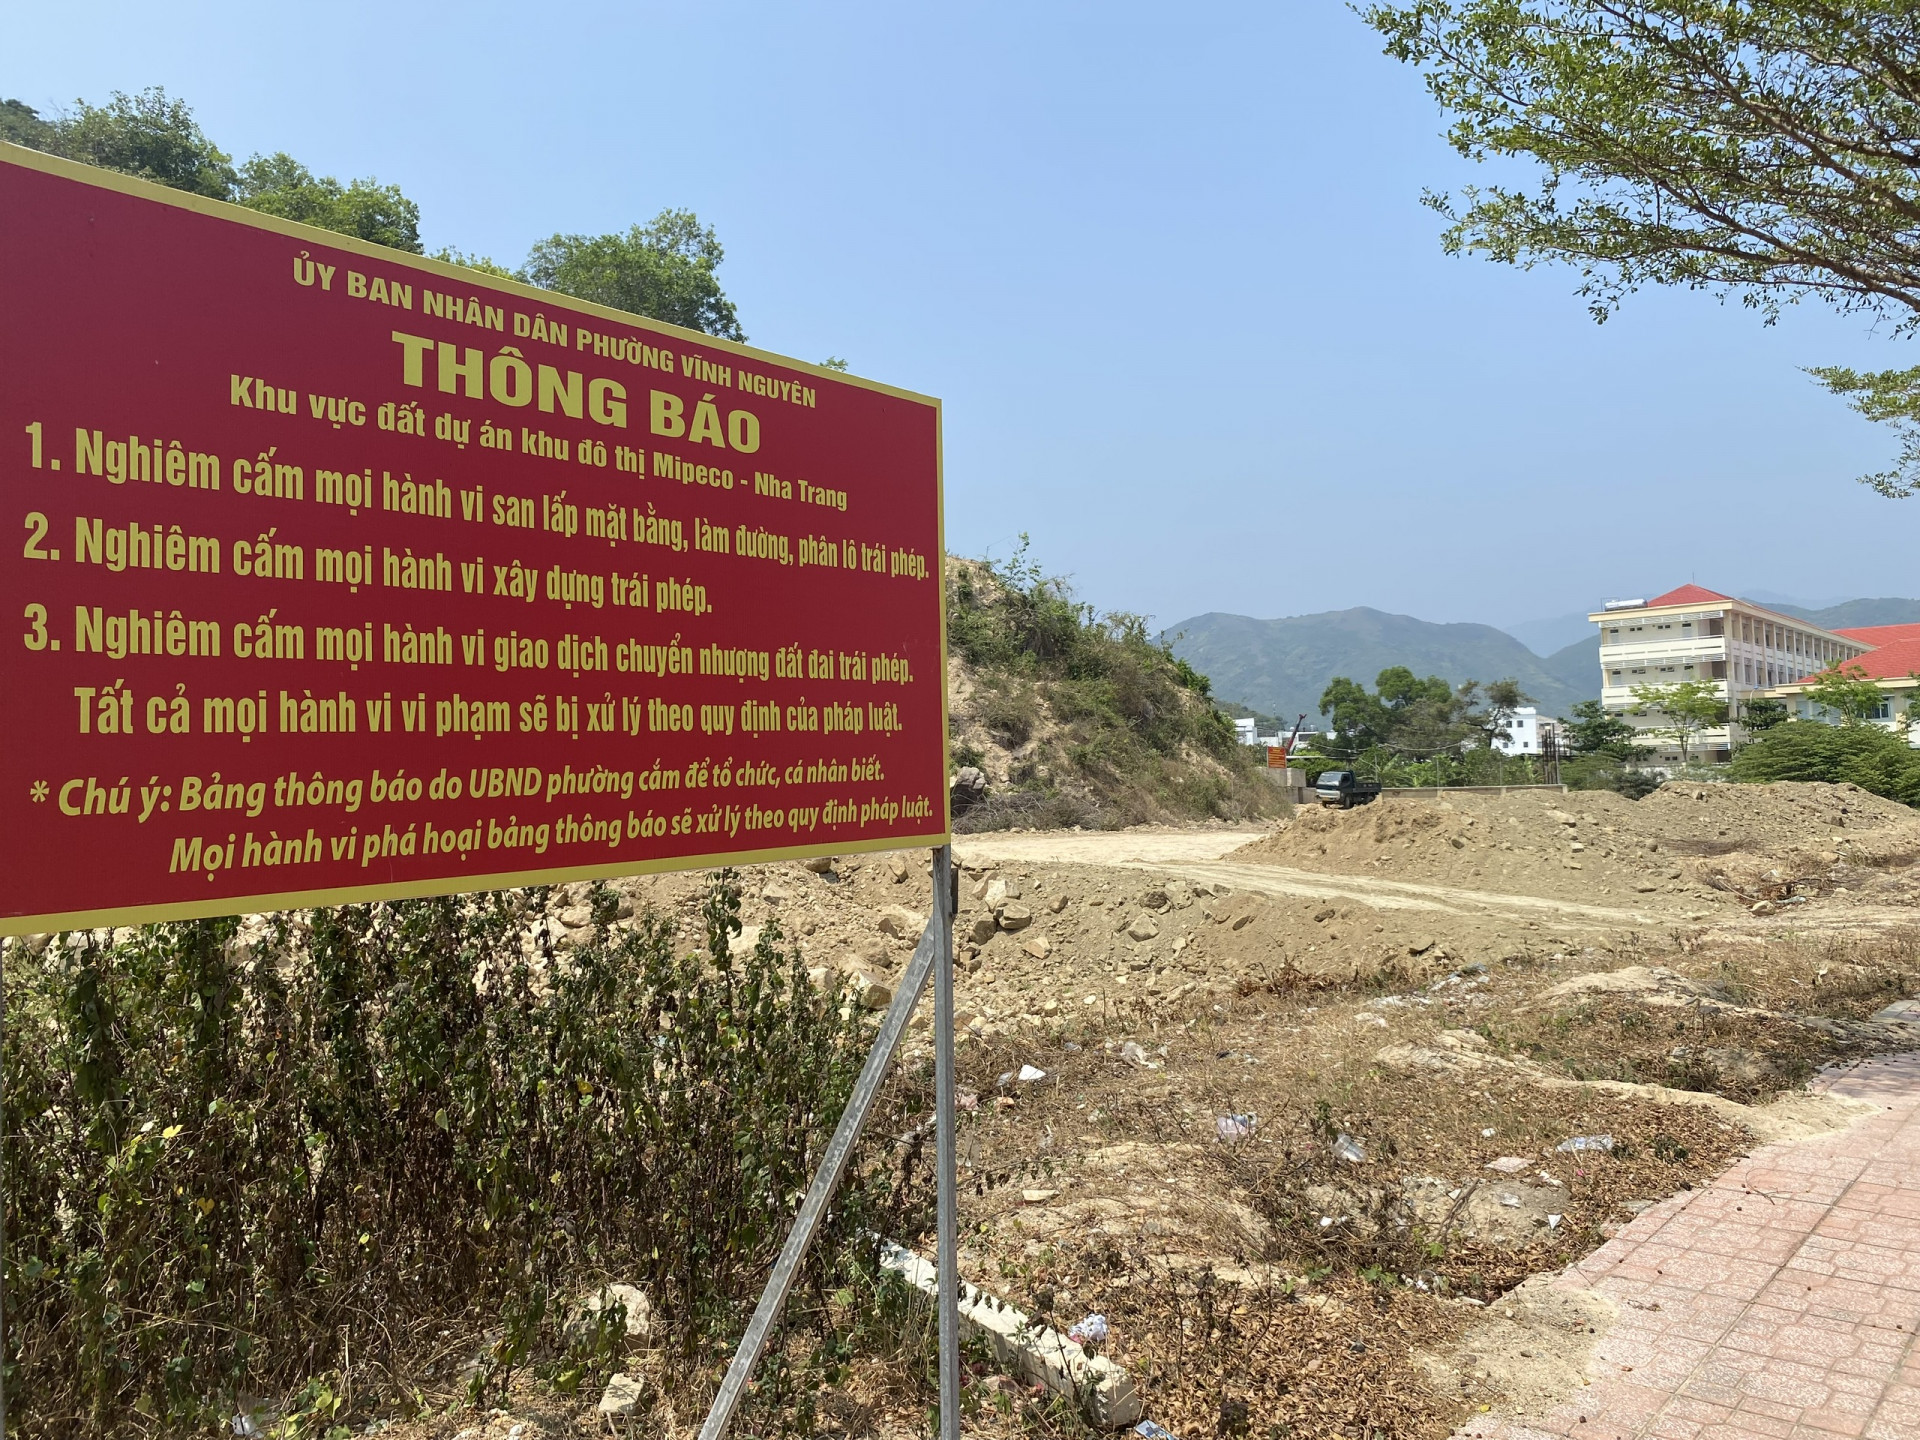 Bảng thông báo mới của UBND phường Vĩnh Nguyên được dựng lên sau nhiều lần bị phá.